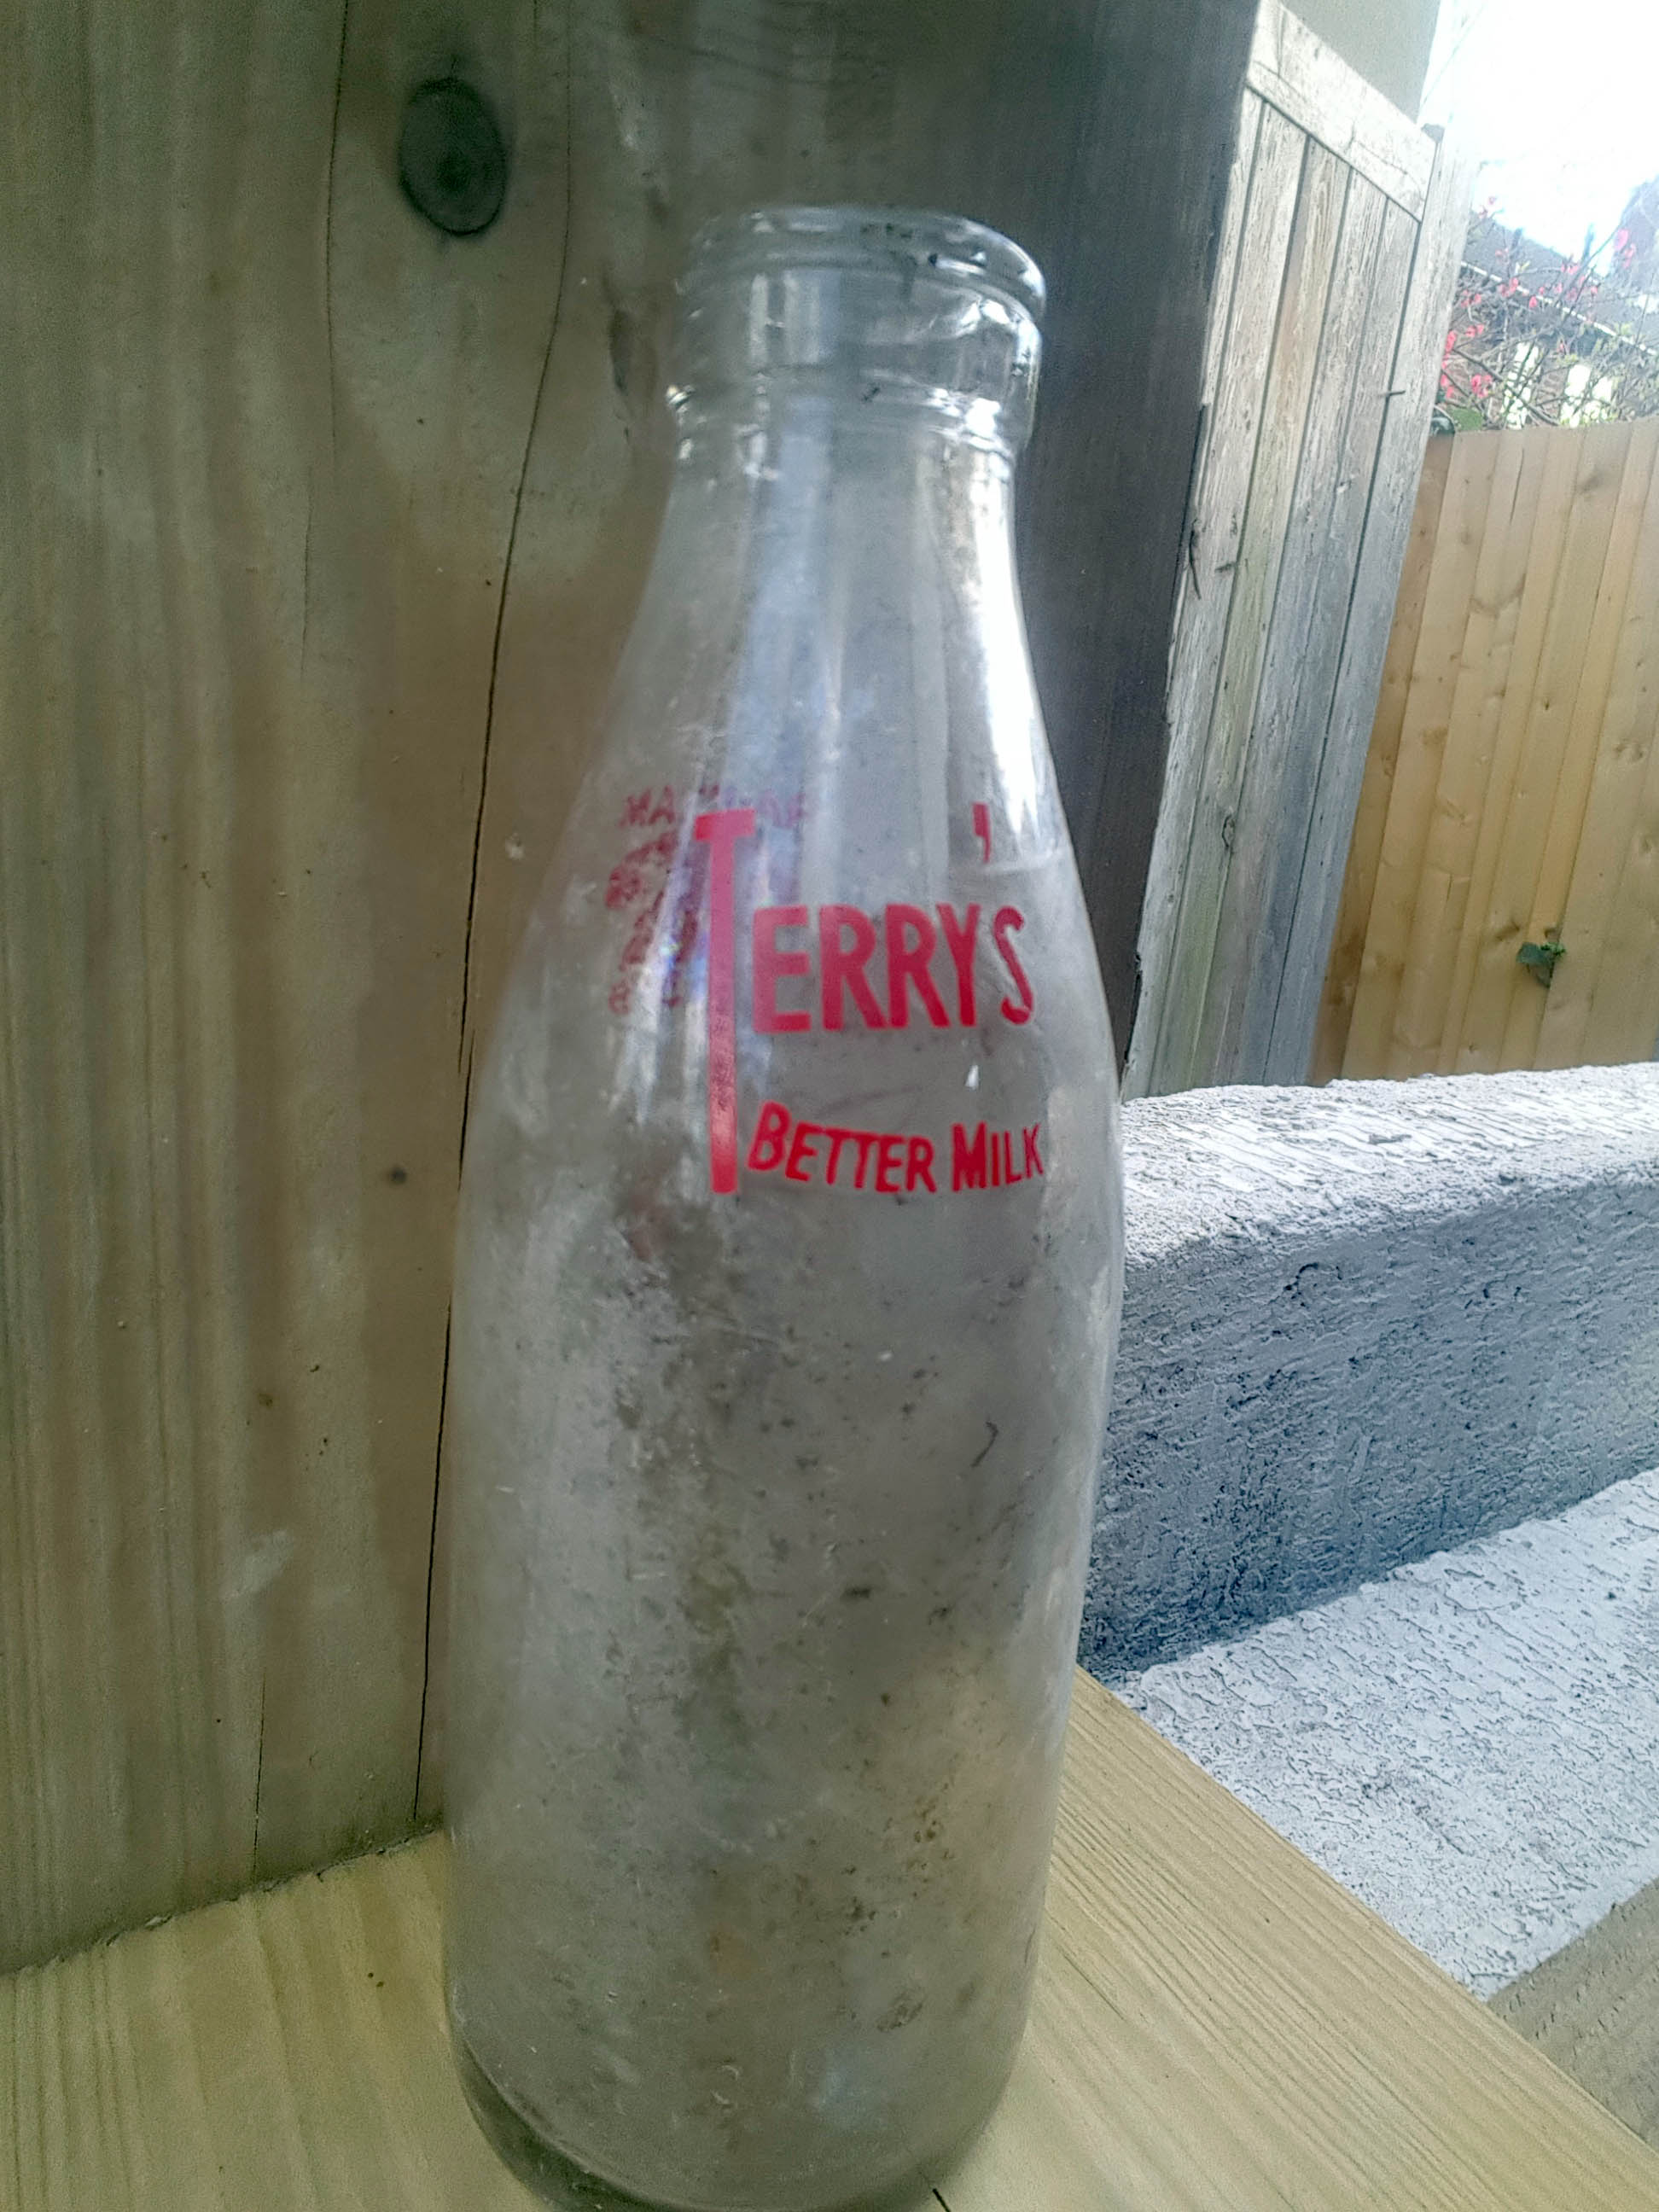 Terrys dairy milk bottle